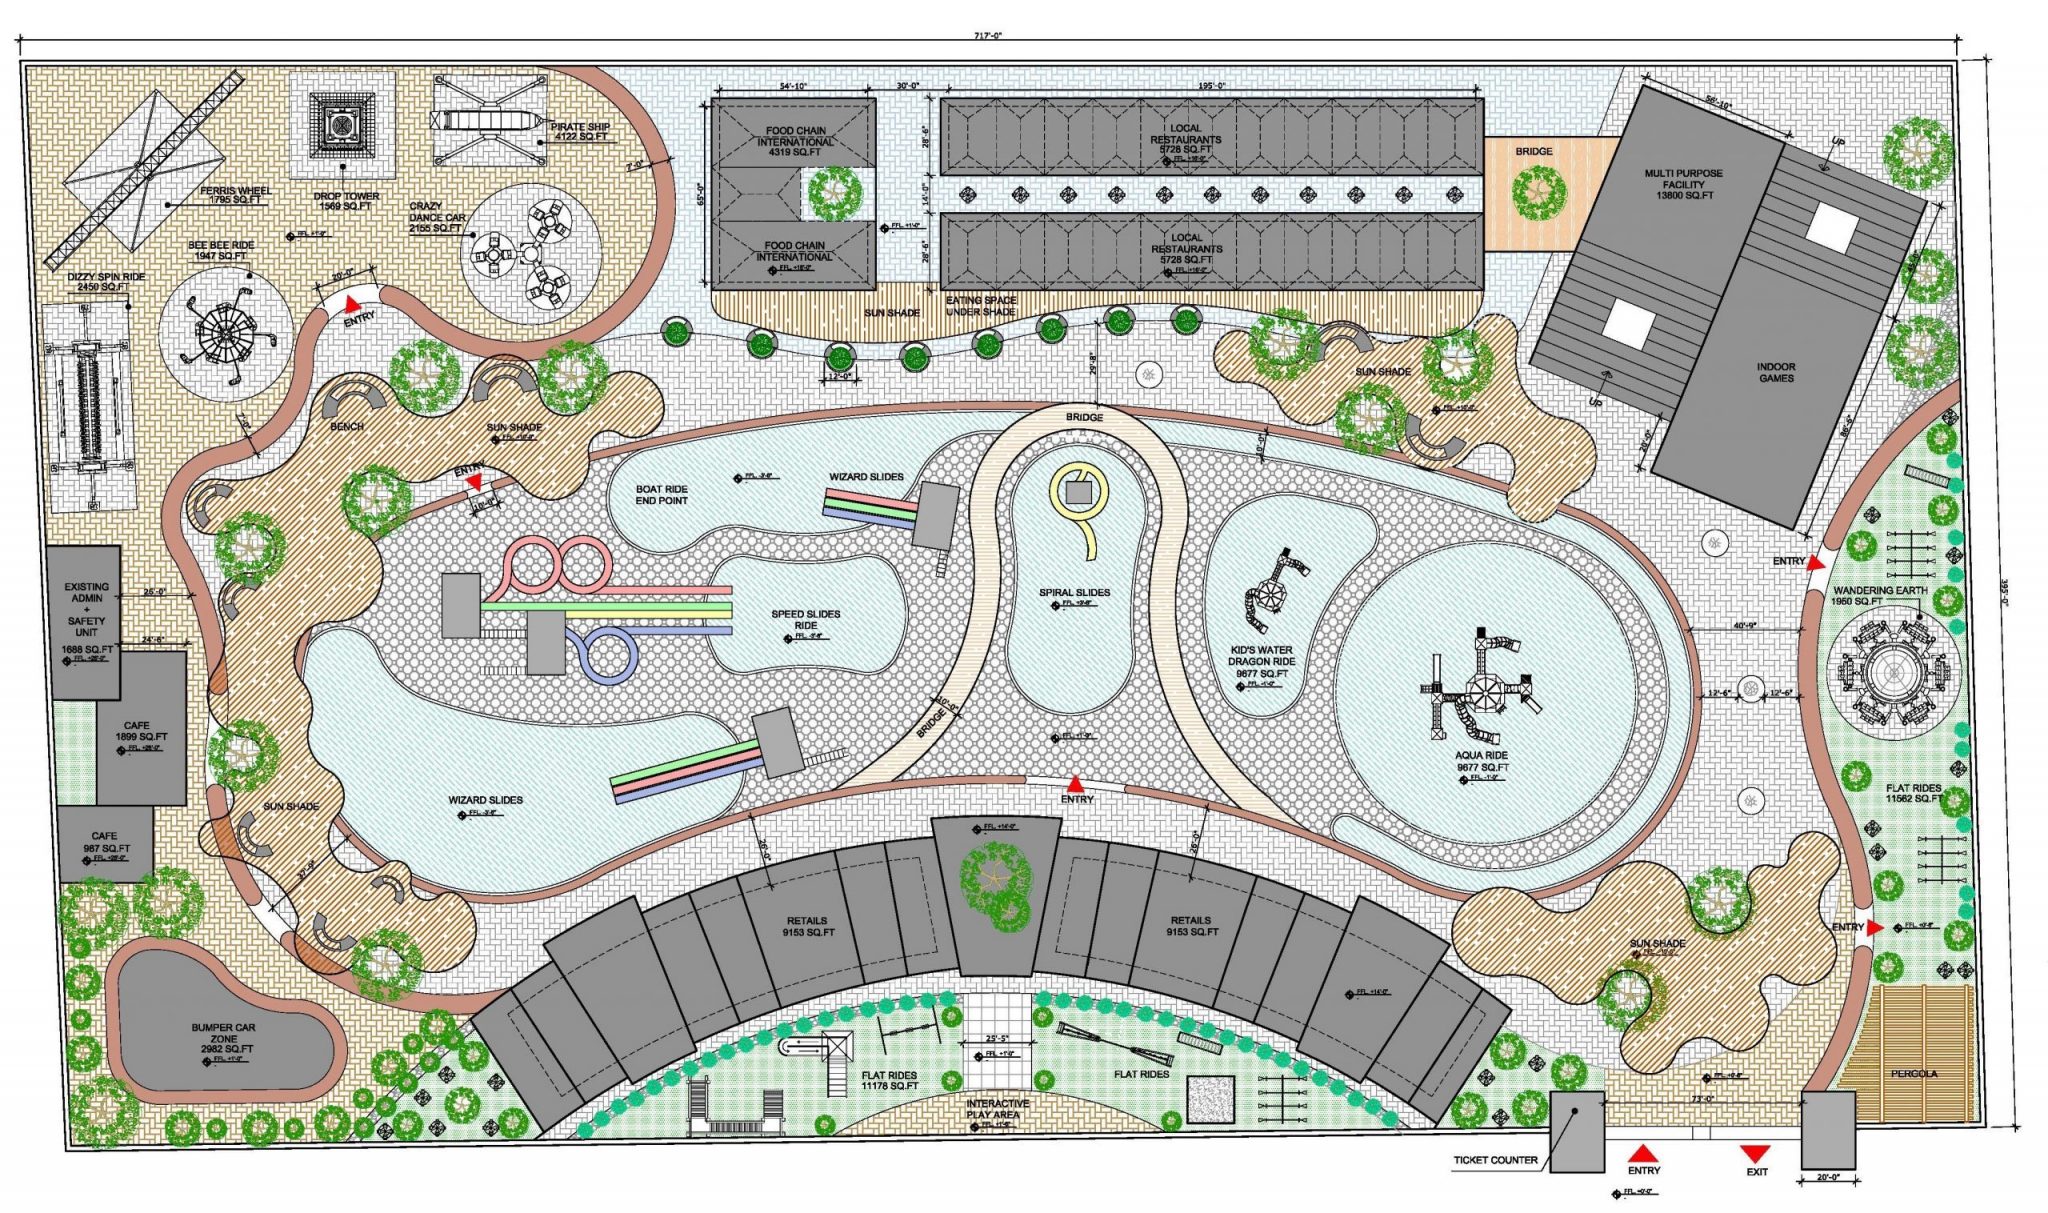 Theme Park Planning Parking Design Theme Park Map | Images and Photos ...